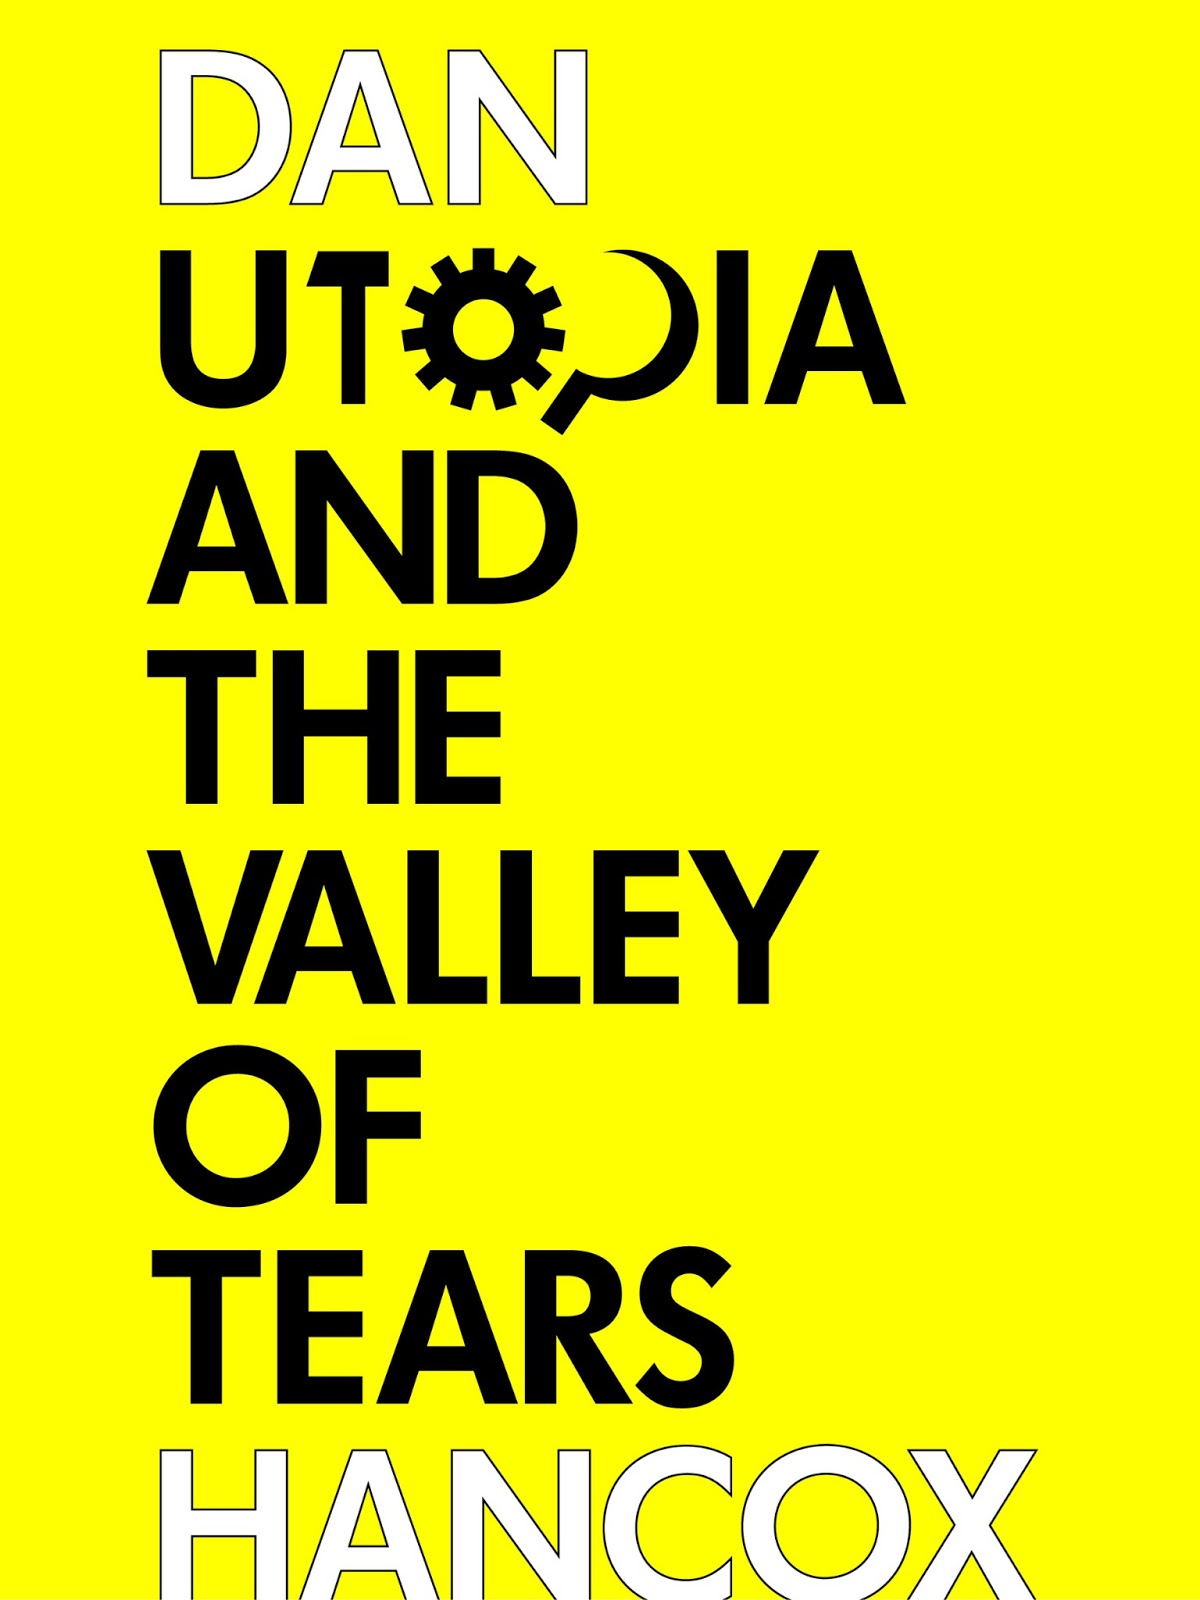 http://3.bp.blogspot.com/-MbWKAOQnmIY/URg7mLiDymI/AAAAAAAAAP8/7qlZ9J_jMSU/s1600/utopia+and+the+valley+of+tears_cover_01.jpg